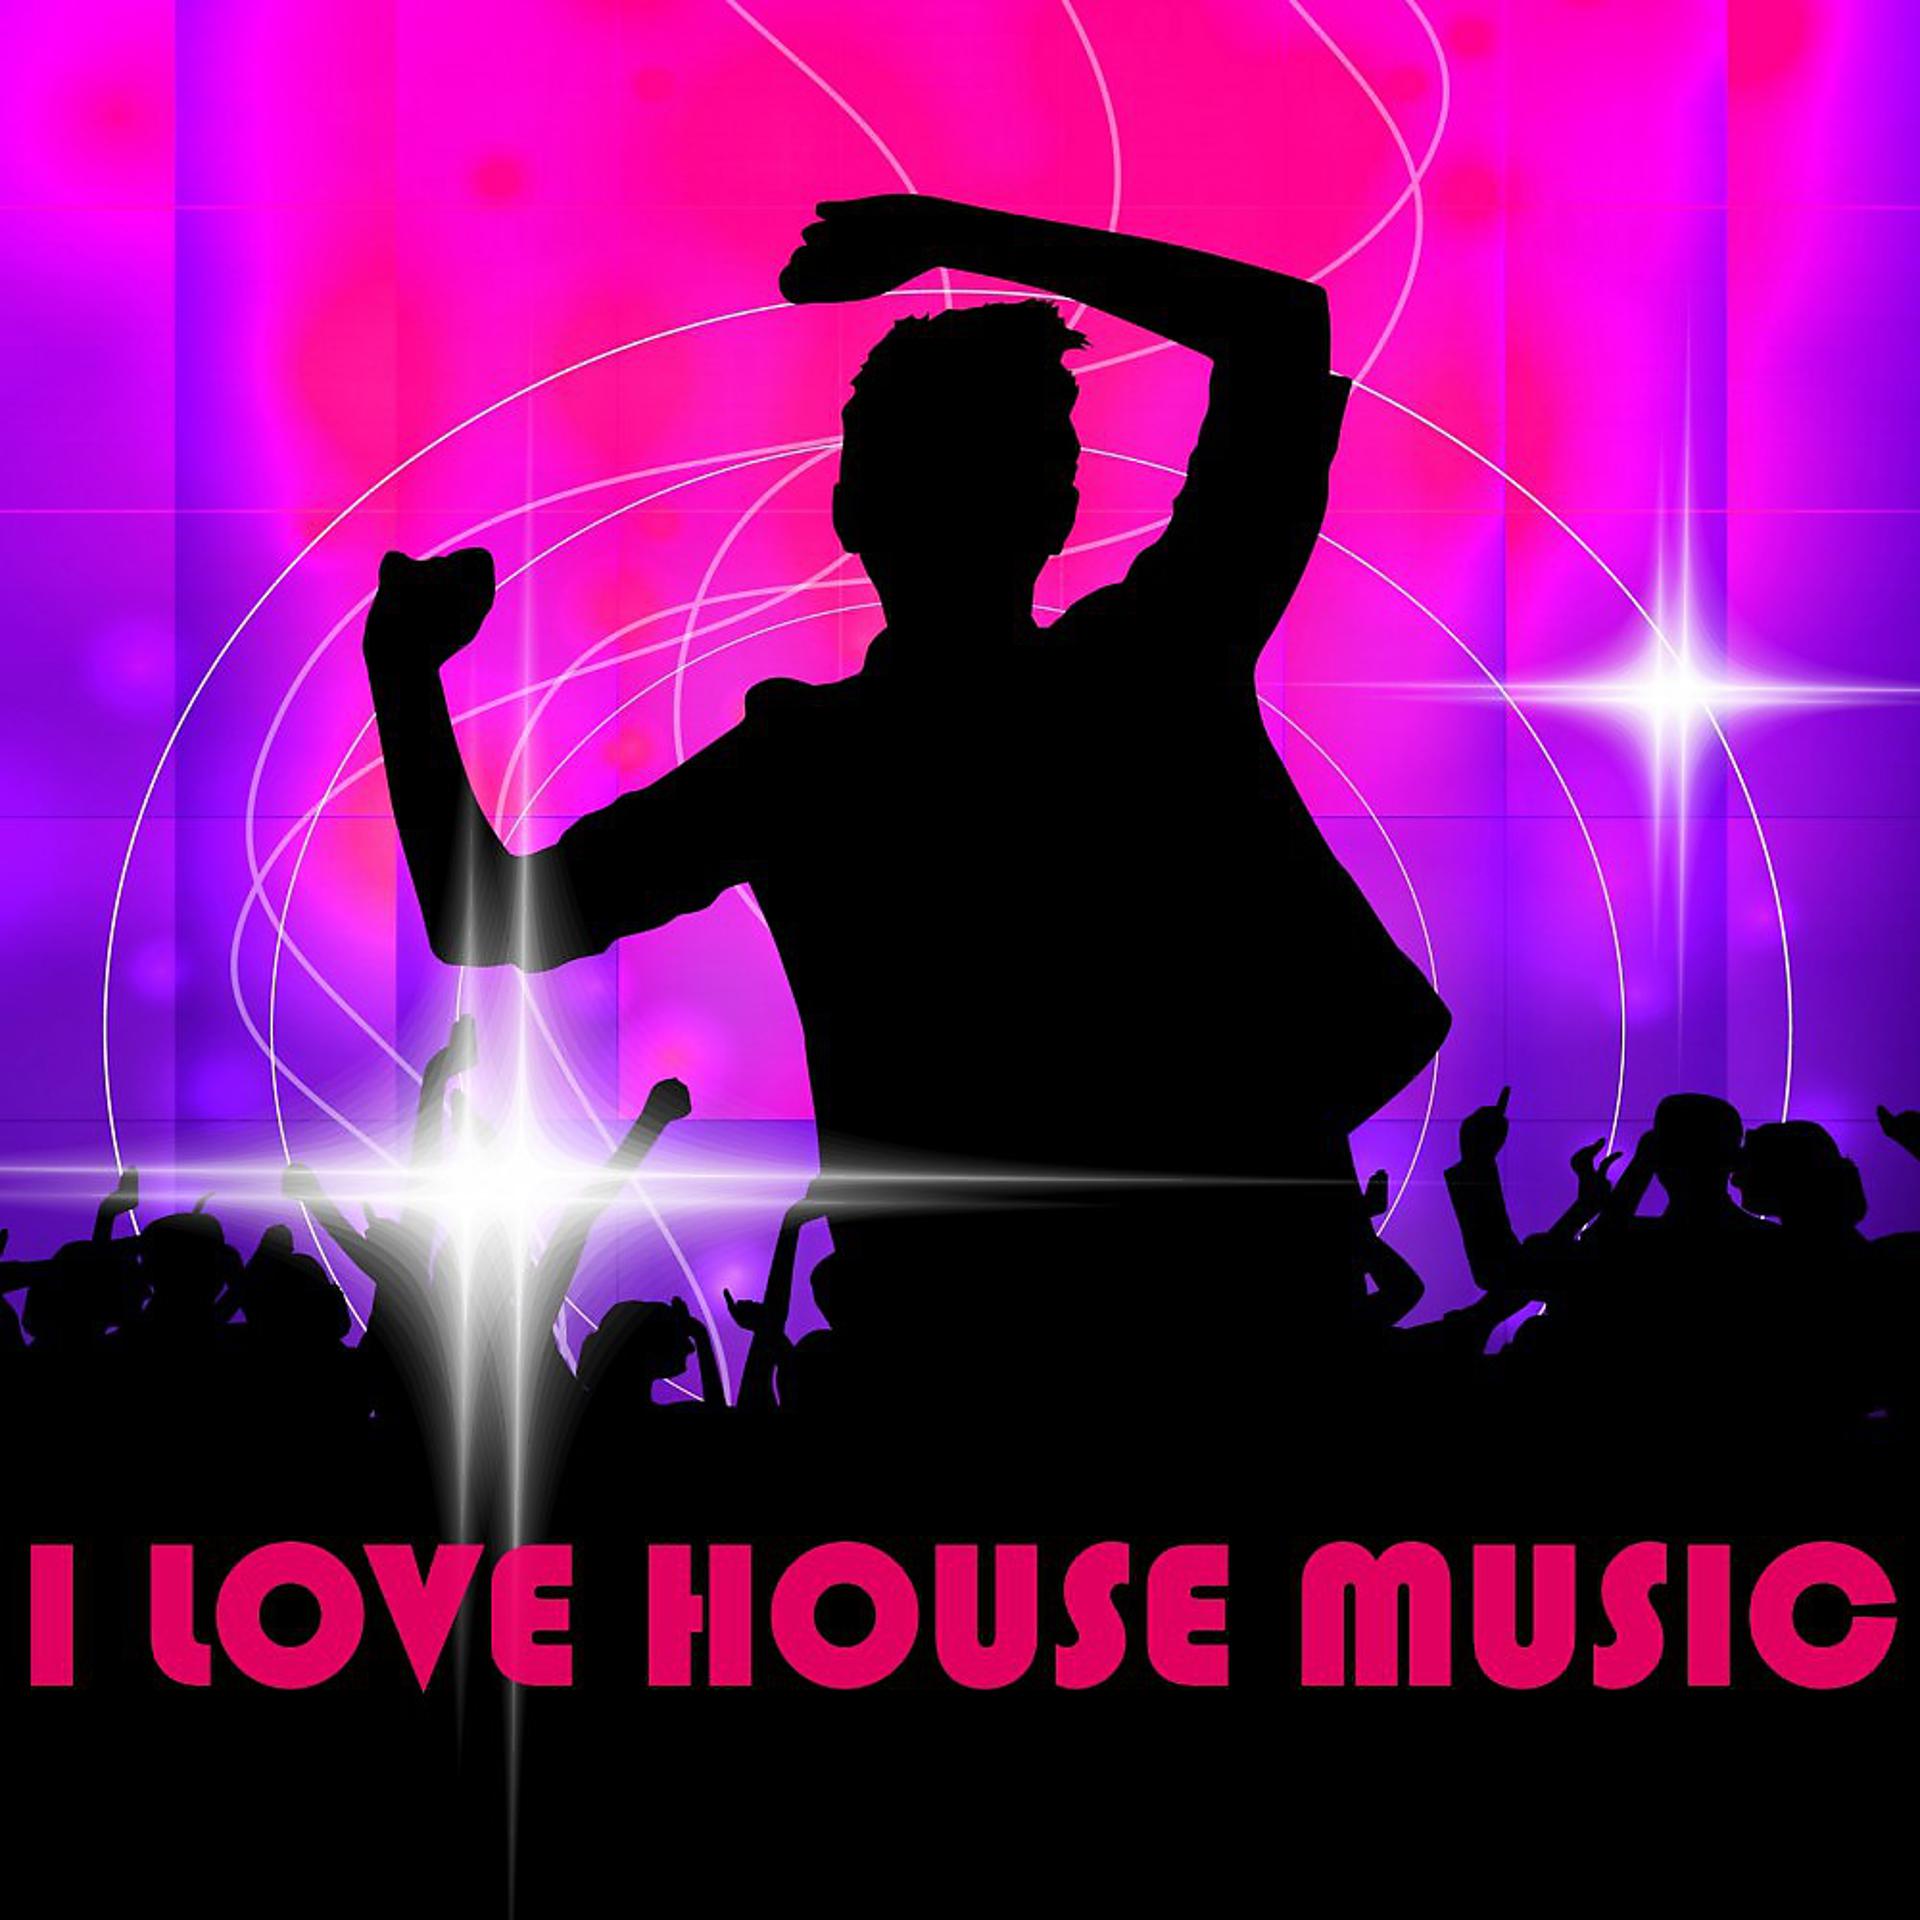 Саундтрек хаус. Хаус Мьюзик. Жанры электронной музыки Хаус. House Music обложка. Хаус музыка картинки.